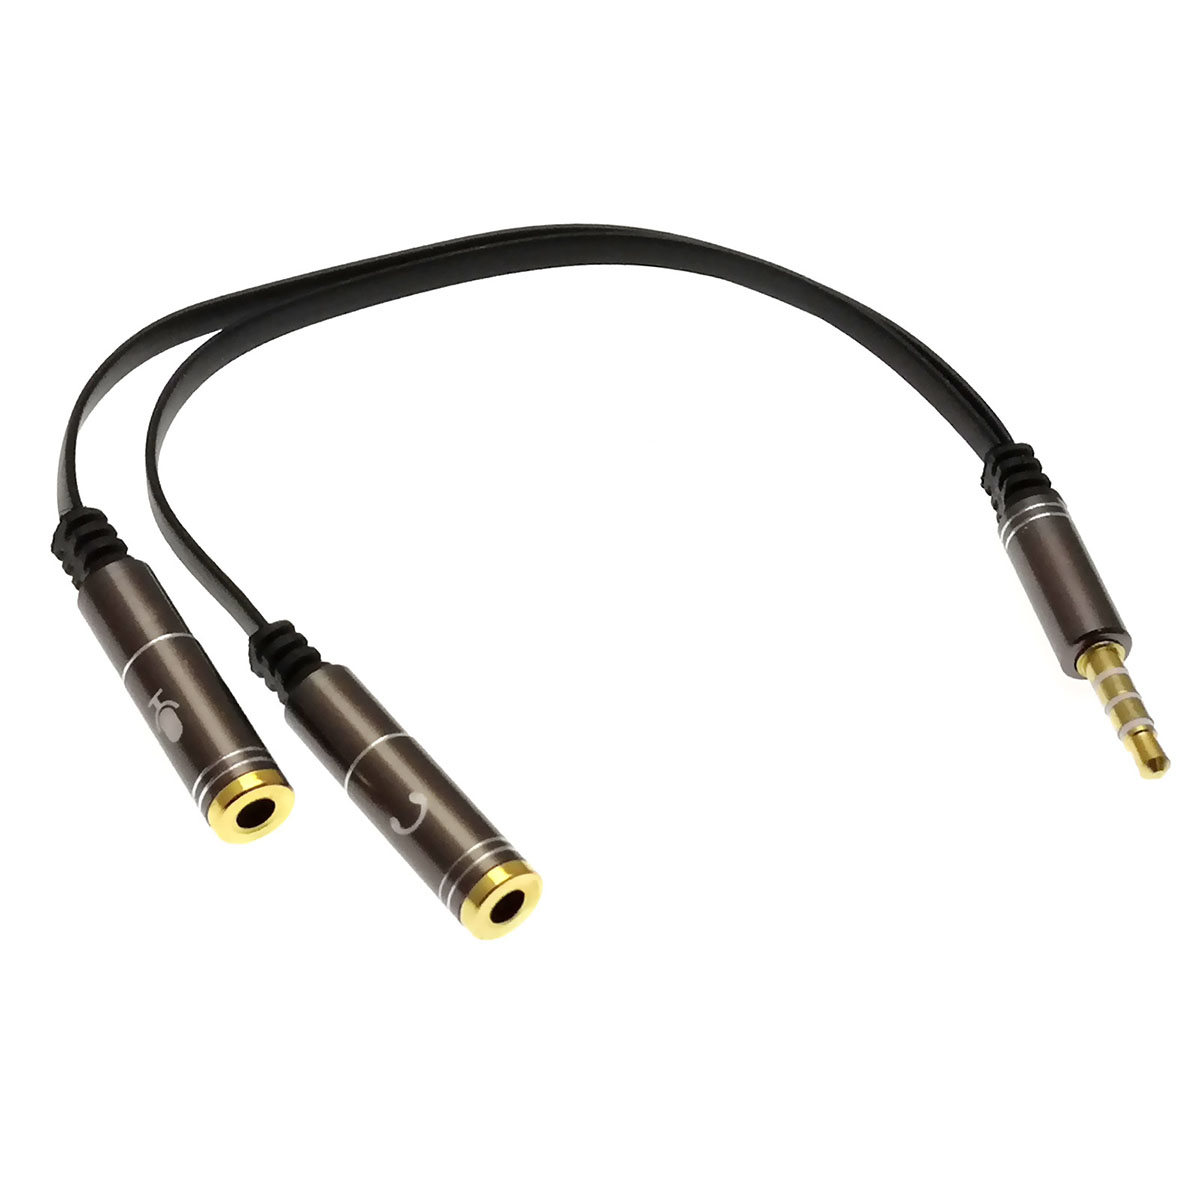 Разветвитель AUX AX02 на наушники 3,5 Jack и микрофон 3,5 Jack, резиновый с металлическими разъёмами, цвет черный